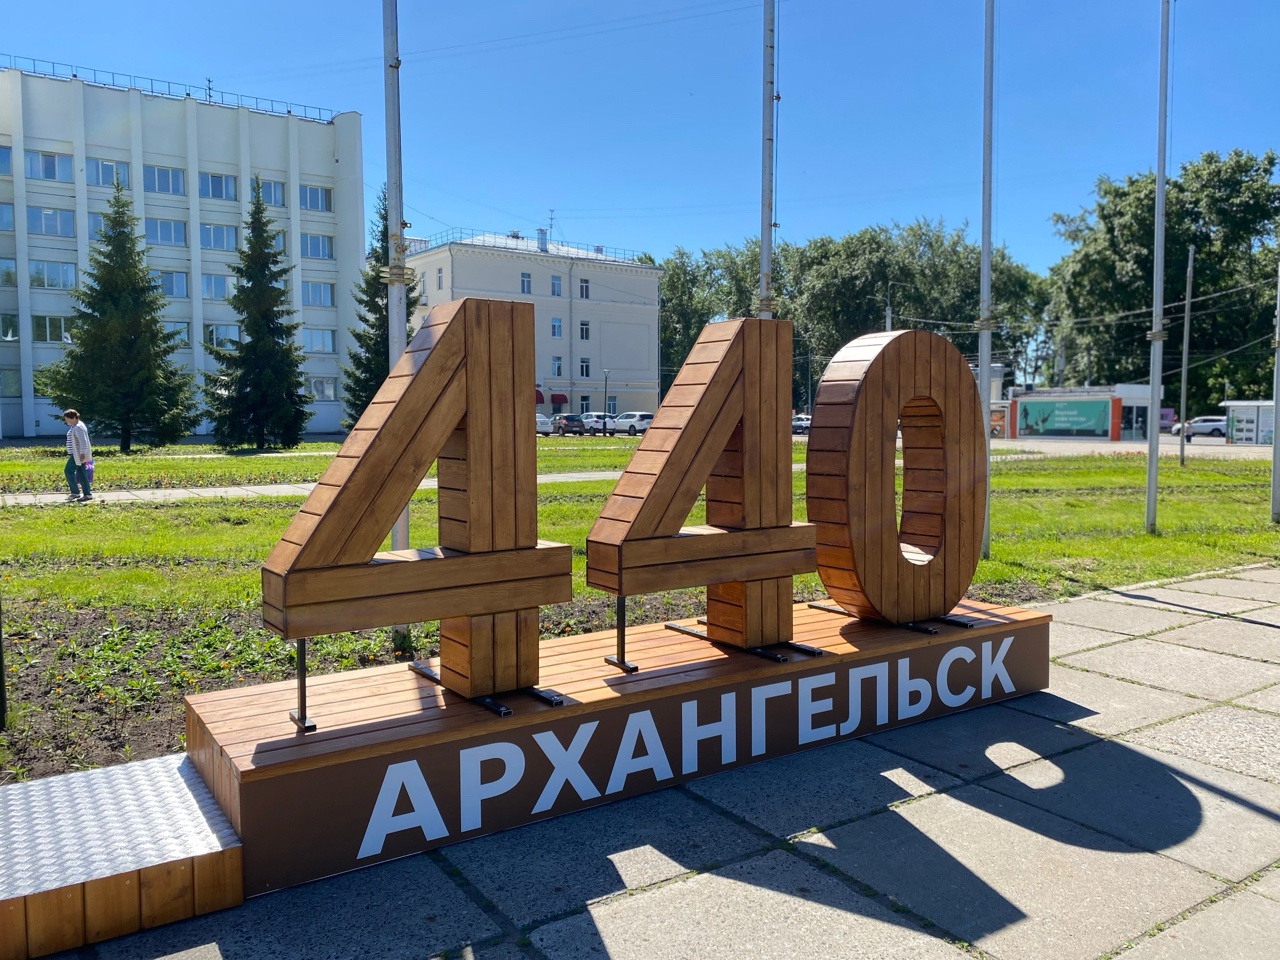 Обнародована полная программа празднования Дня города в Архангельске 